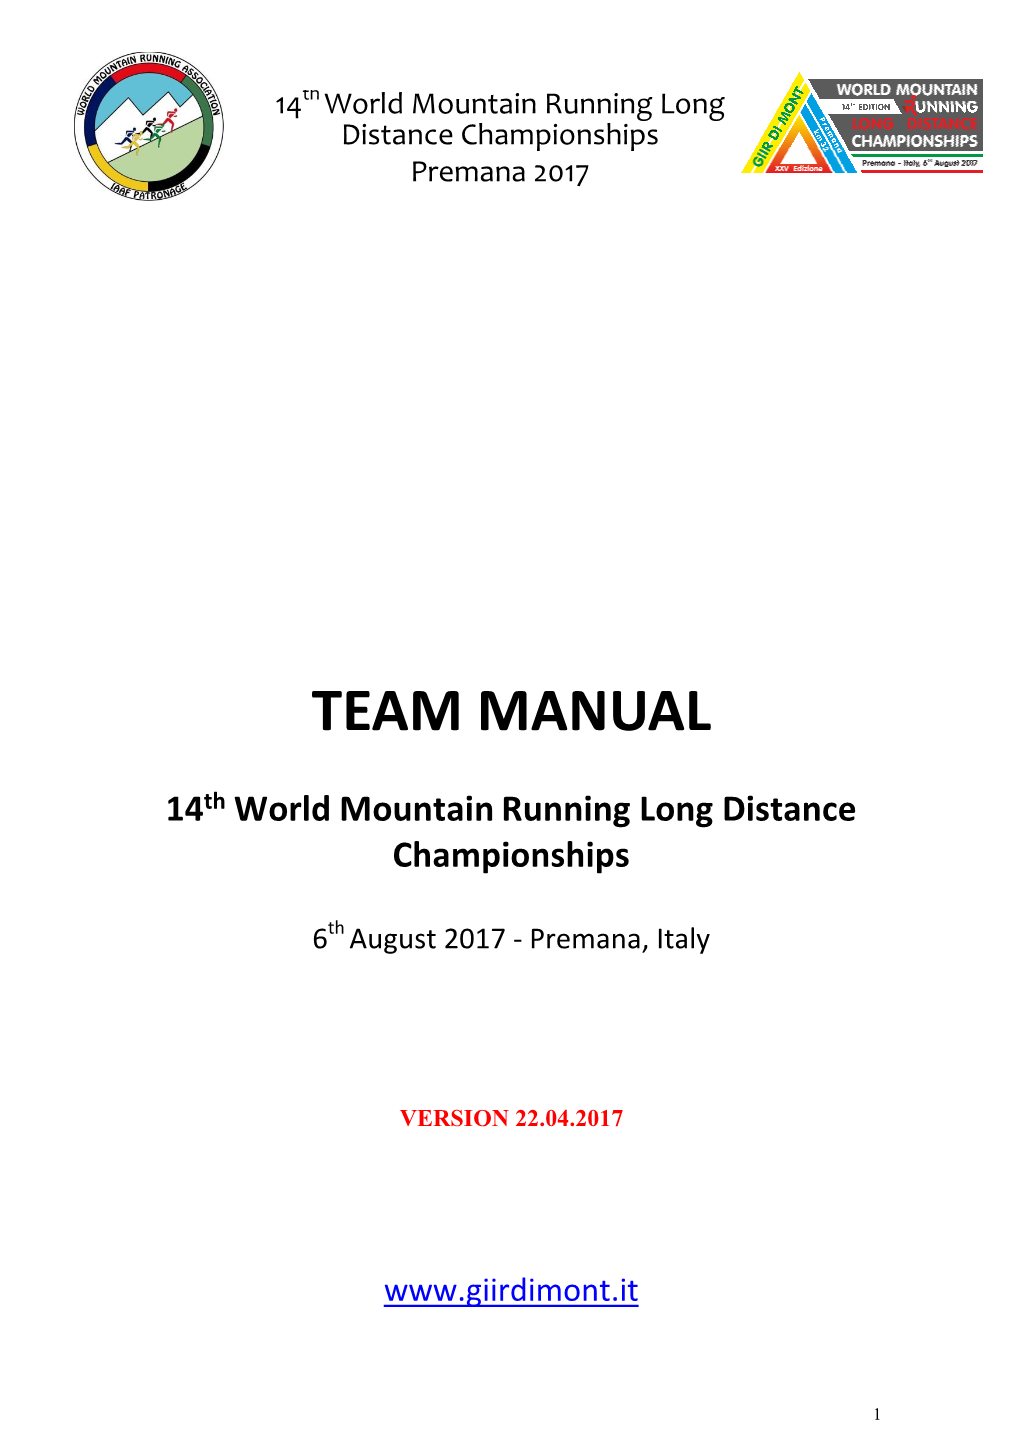 Team Manual Long Distance Wmrldc 22.04.17 Ft